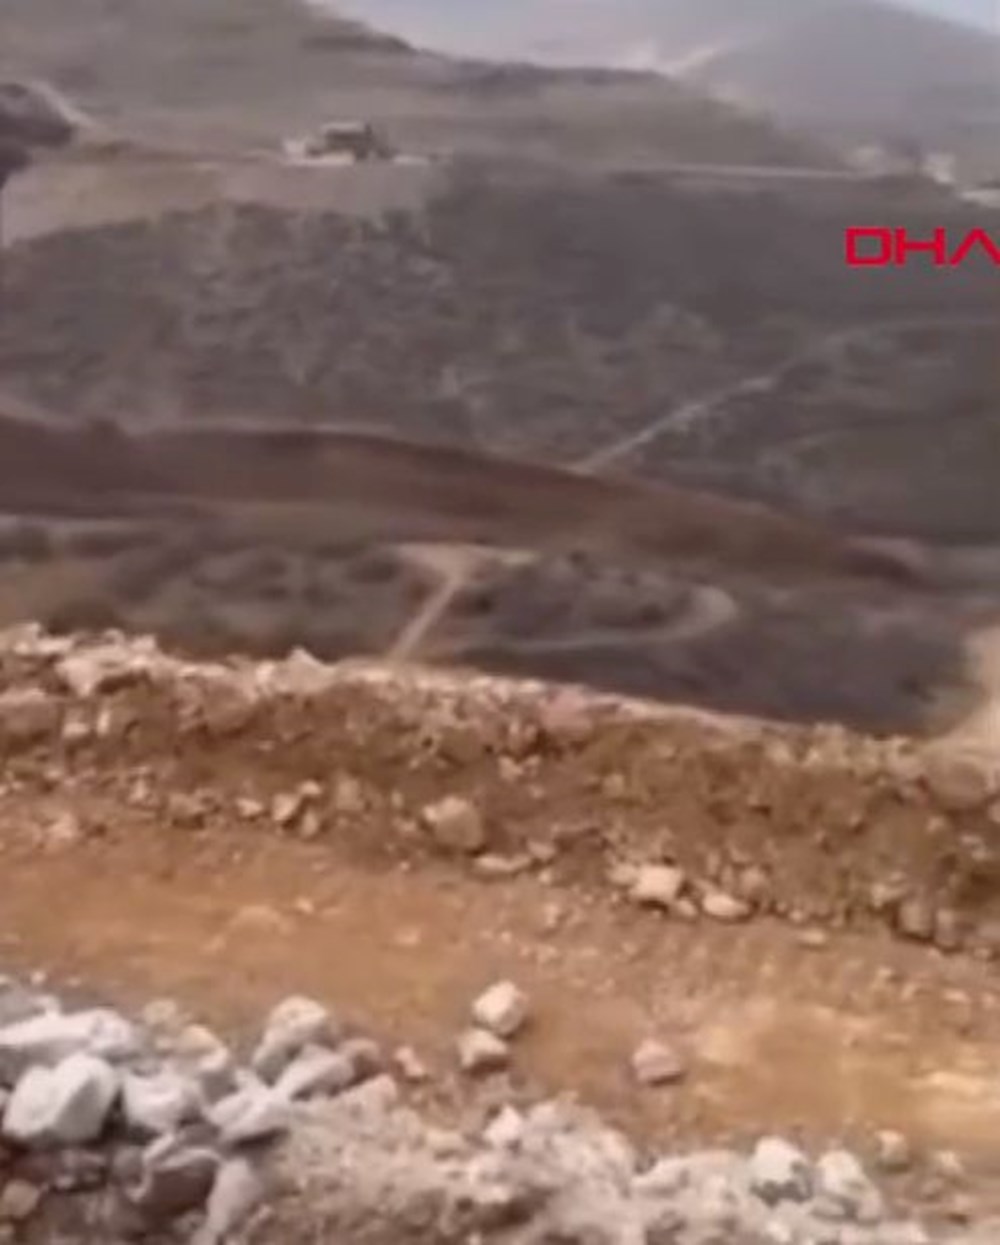 Erzincan İliç’te altın madeninde toprak kayması (Olay
yerinden ilk görüntüler) - 3